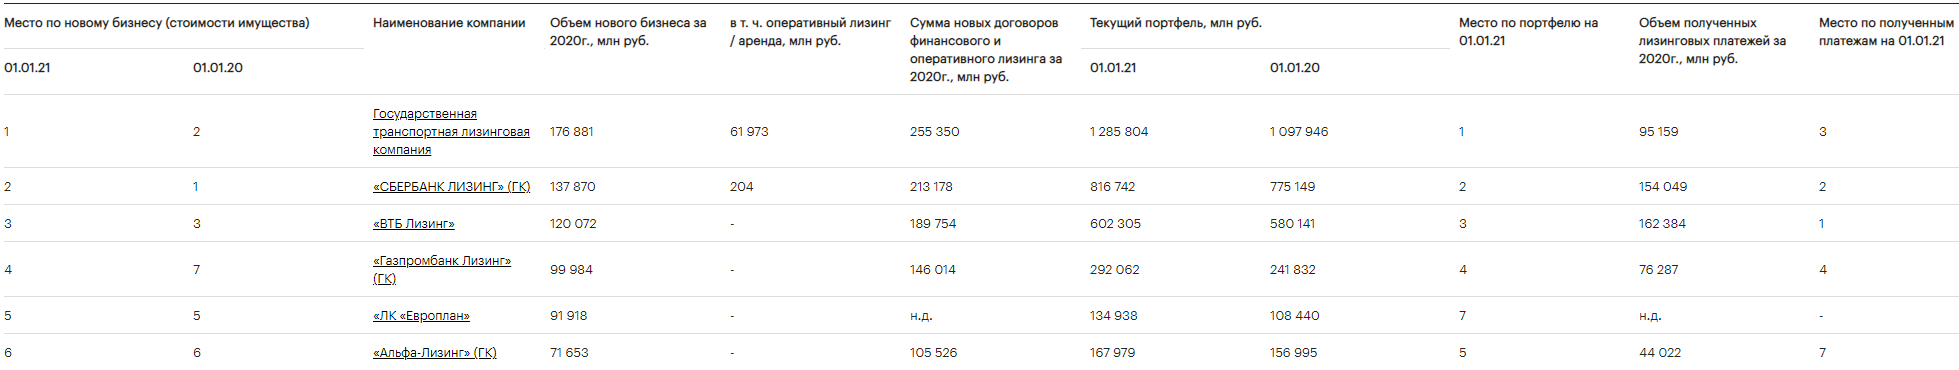 Рэнкинг лизинговых компаний России по итогам 2020 года по данным РА «Эксперт»